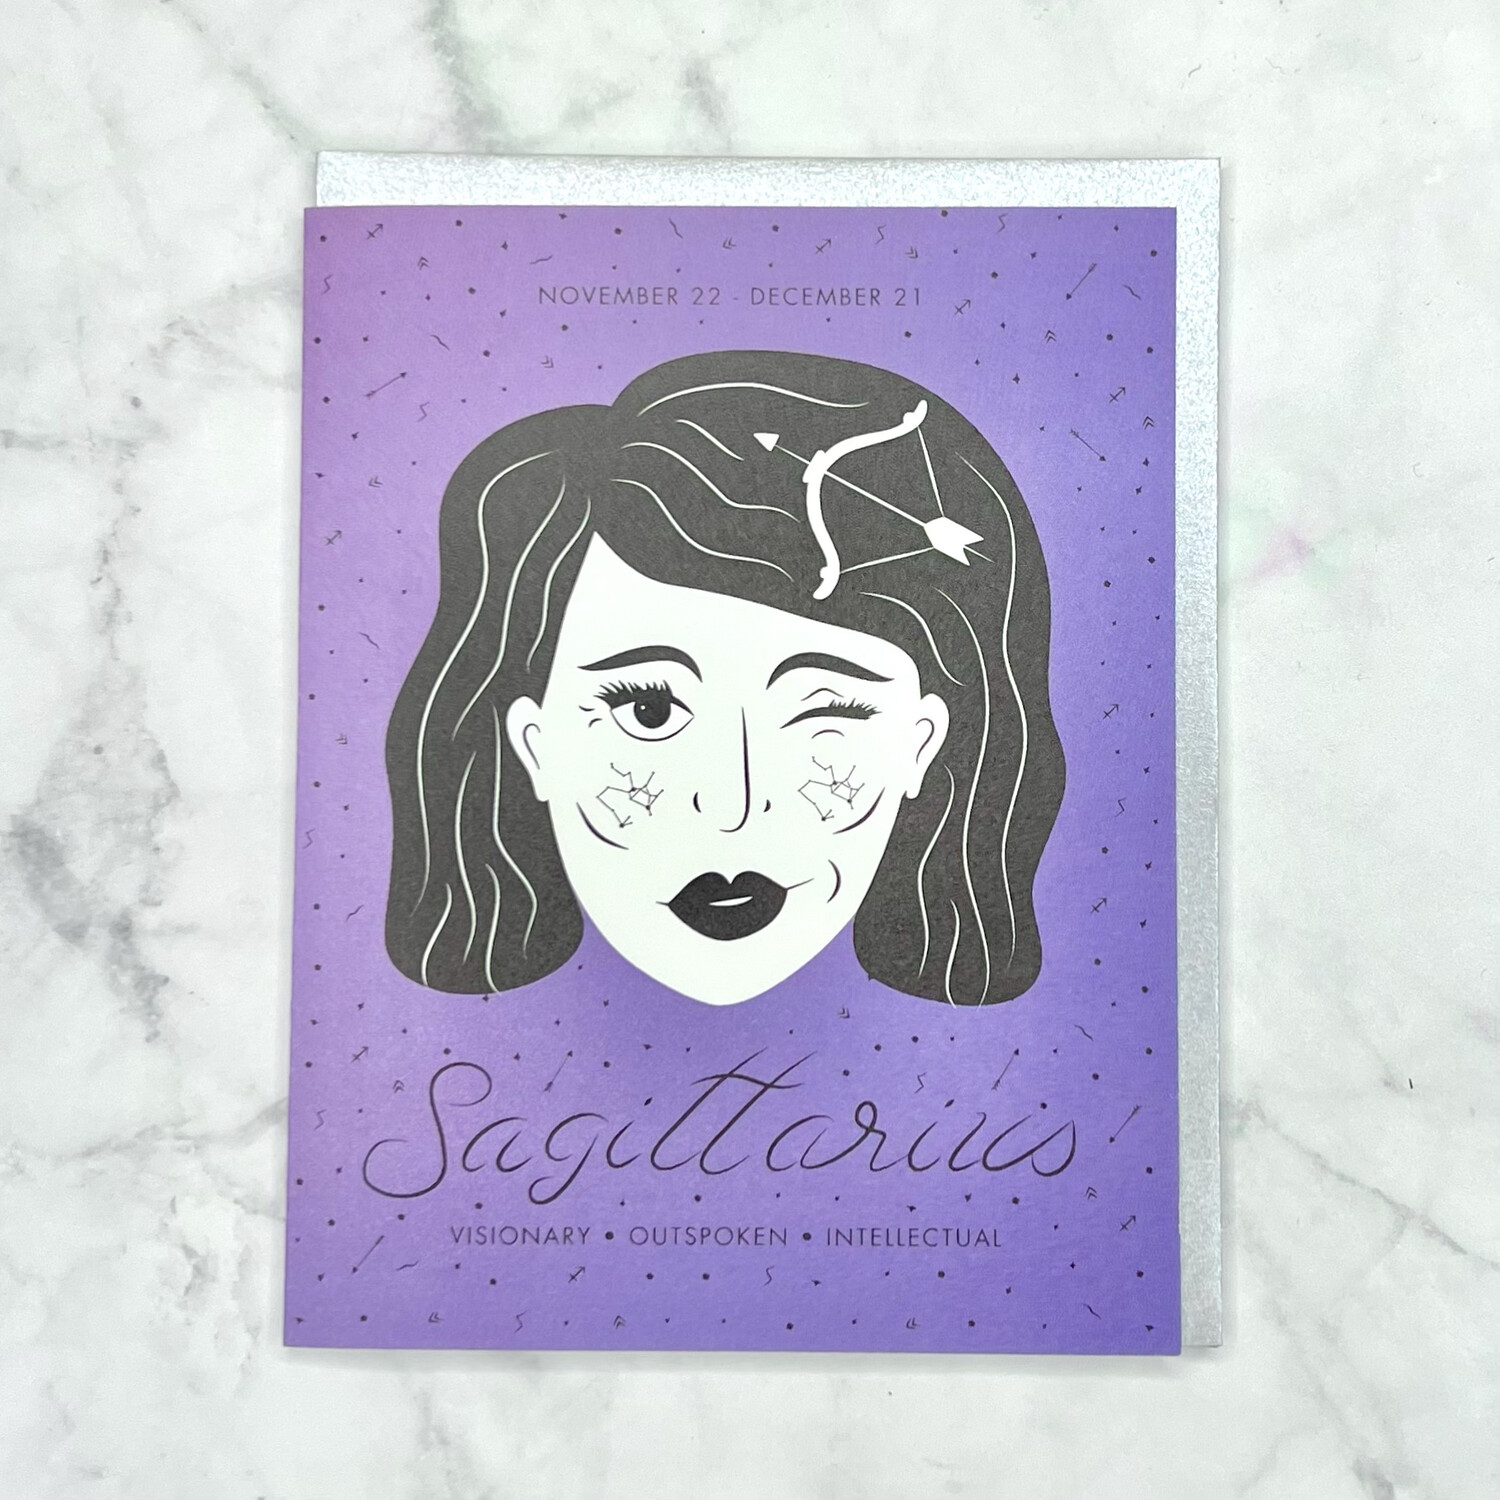 Sagittarius card